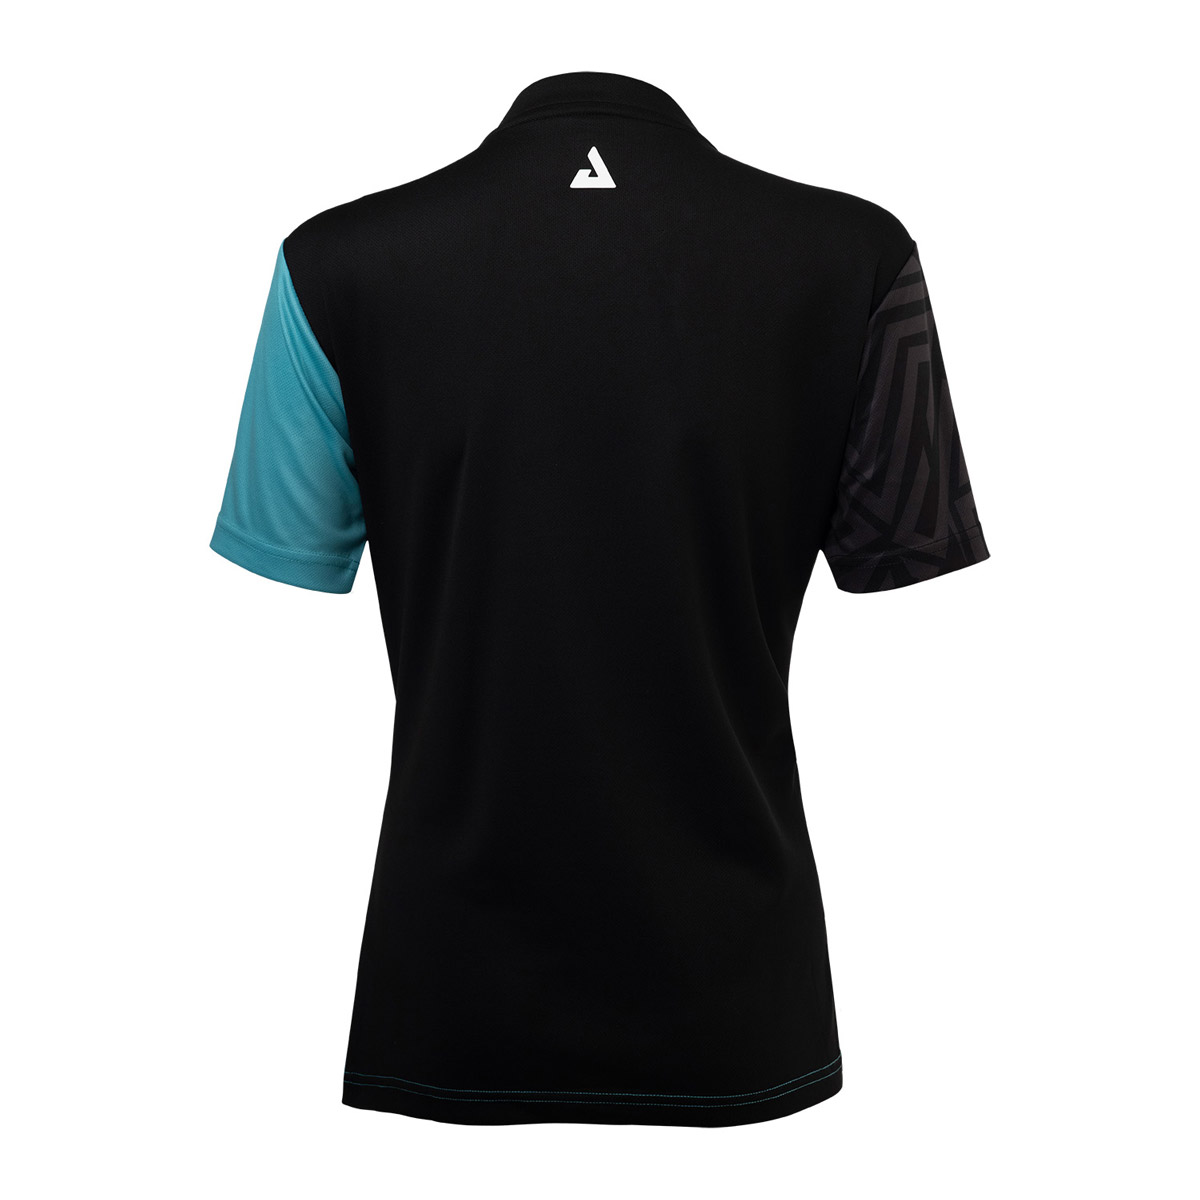 Joola Shirt Synergy Lady turquoise/black XS